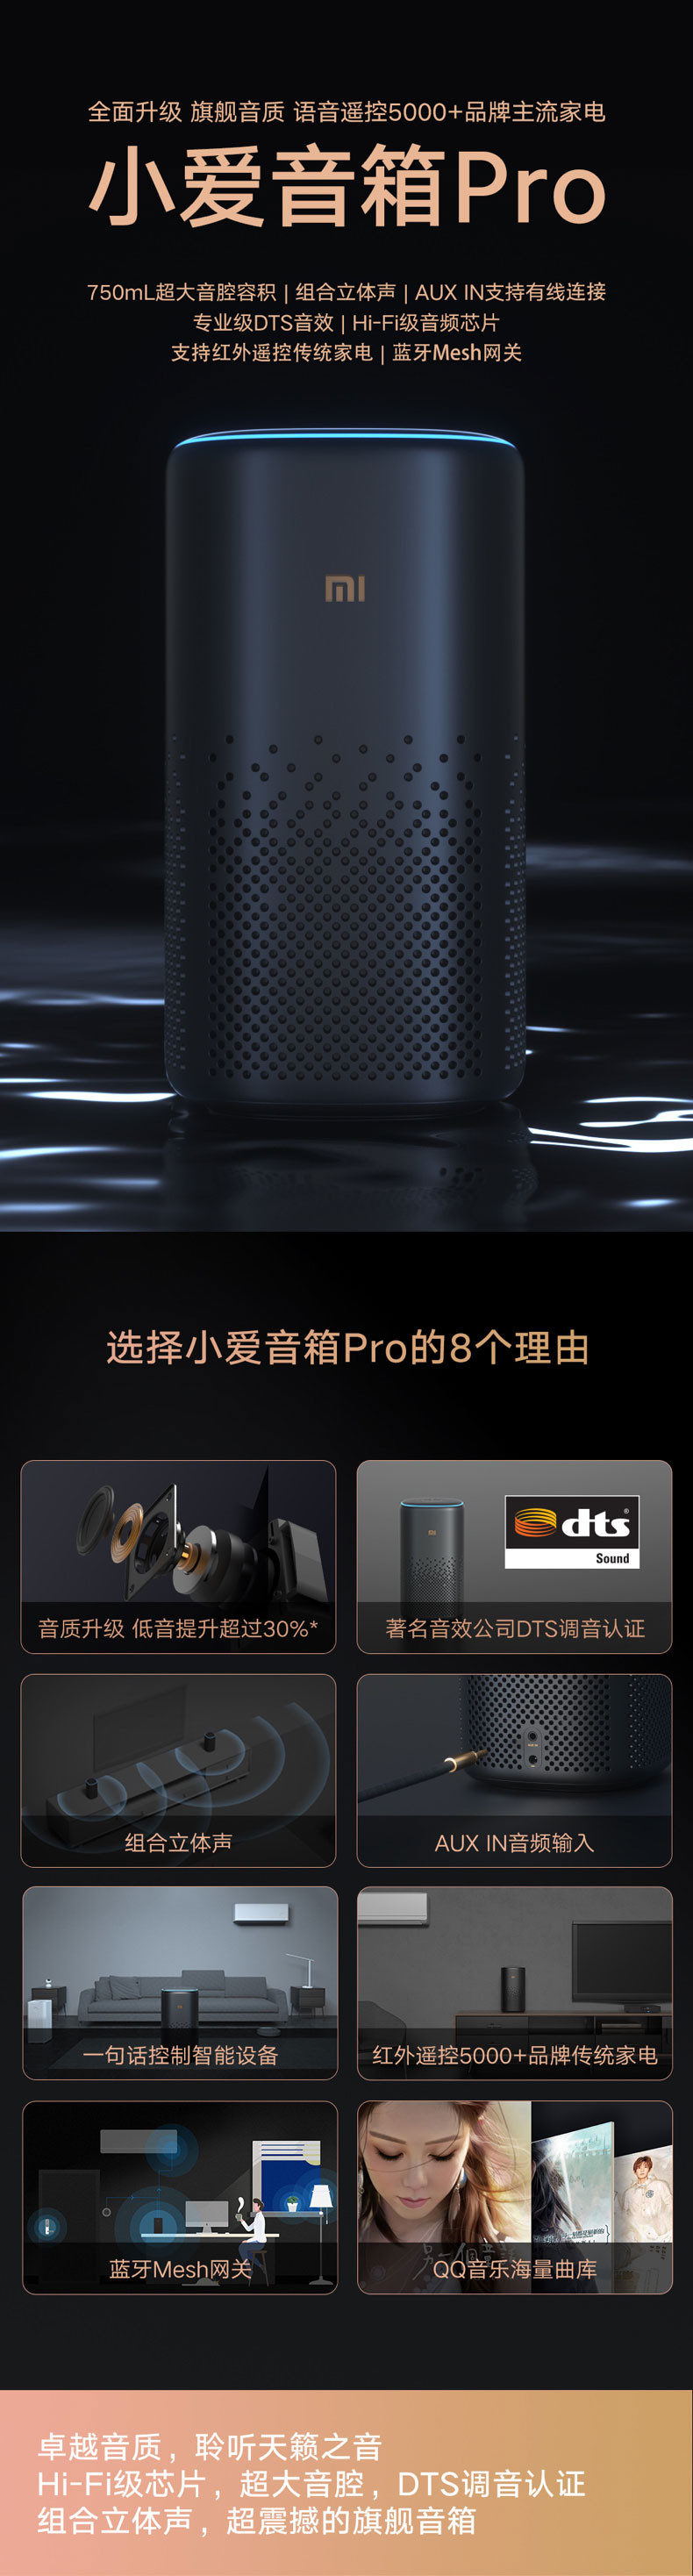 小米/MIUI 小爱智能音箱Pro 无线蓝牙音响 语音控制智能家居 APP远程操控 专业DTS 音效